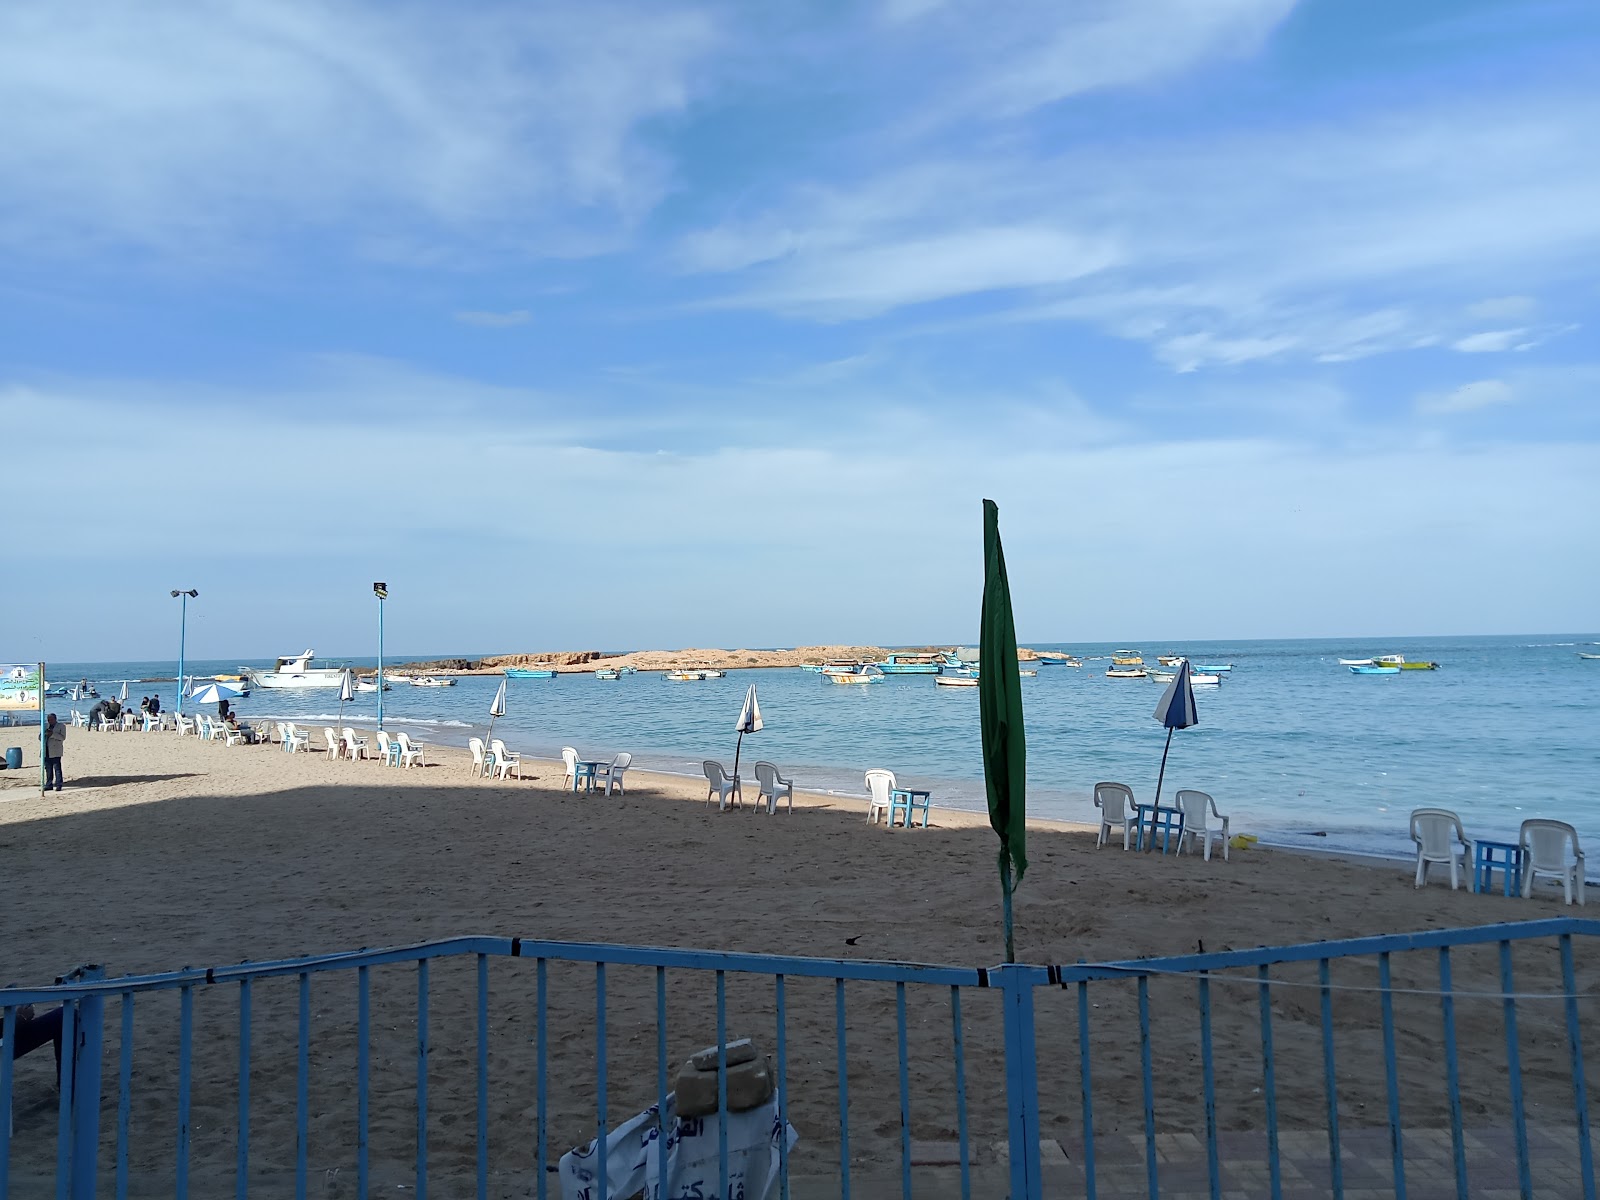 Fotografie cu Miamy Beach - locul popular printre cunoscătorii de relaxare